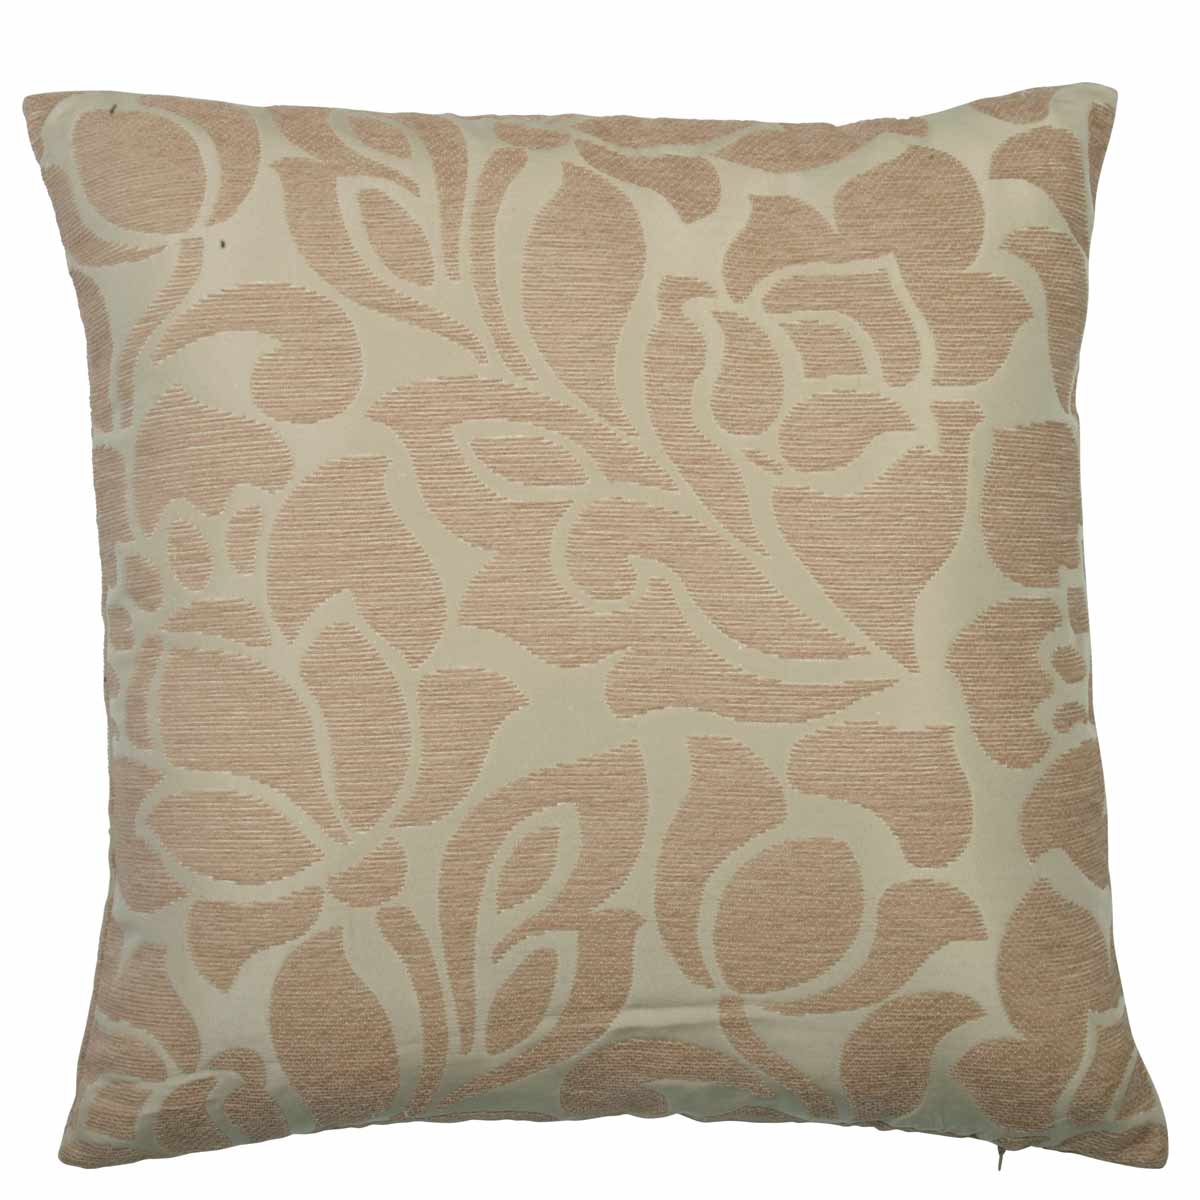 Kew Filled Cushion in Beige | Terrys Fabrics UK